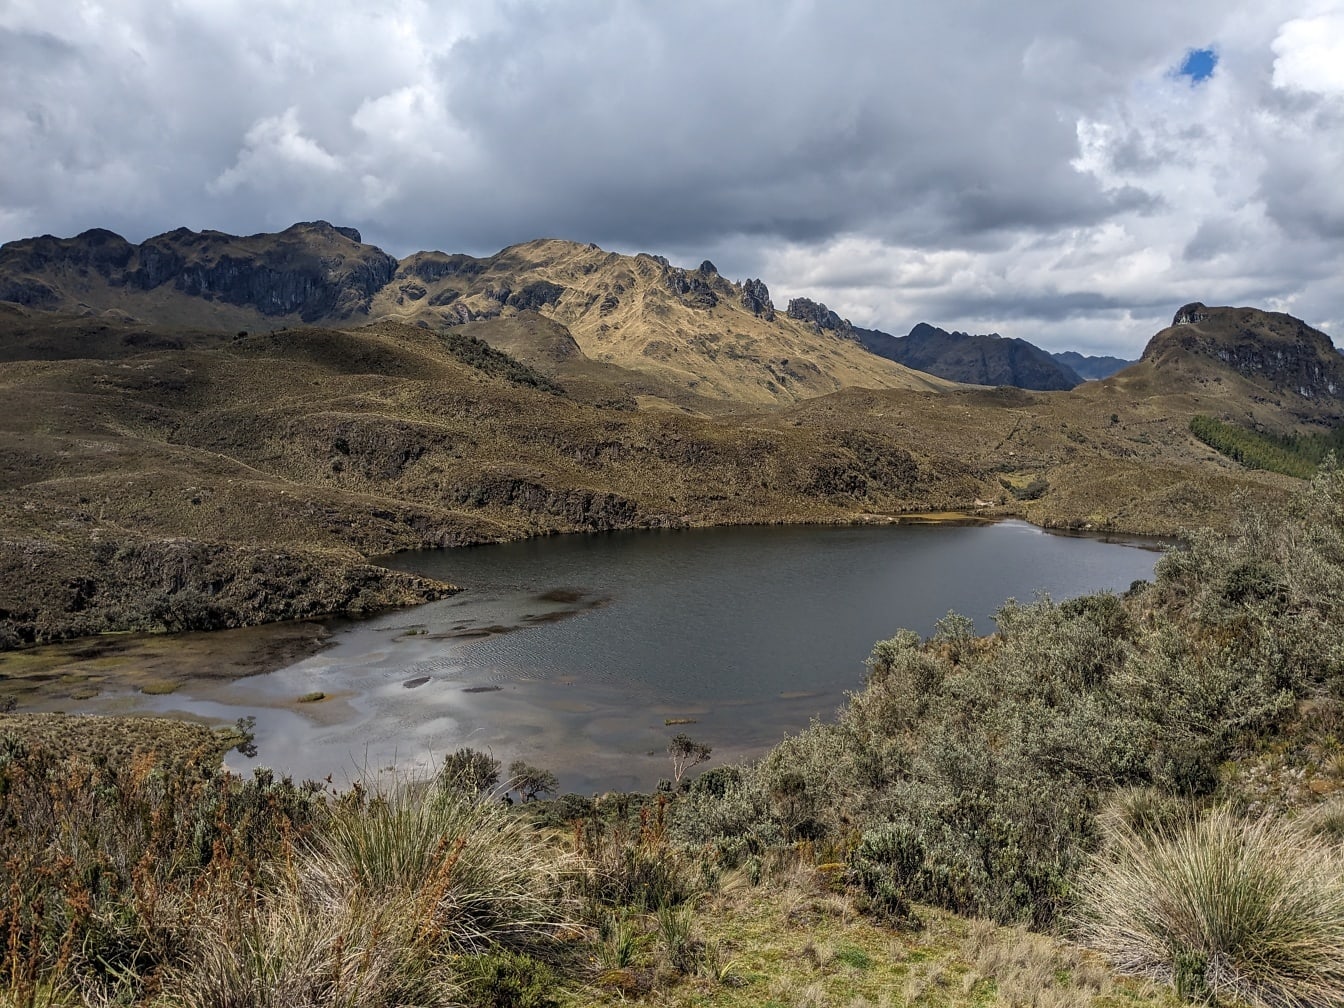 Vườn quốc gia Cajas được bao quanh bởi những ngọn núi ở vùng cao nguyên Ecuador